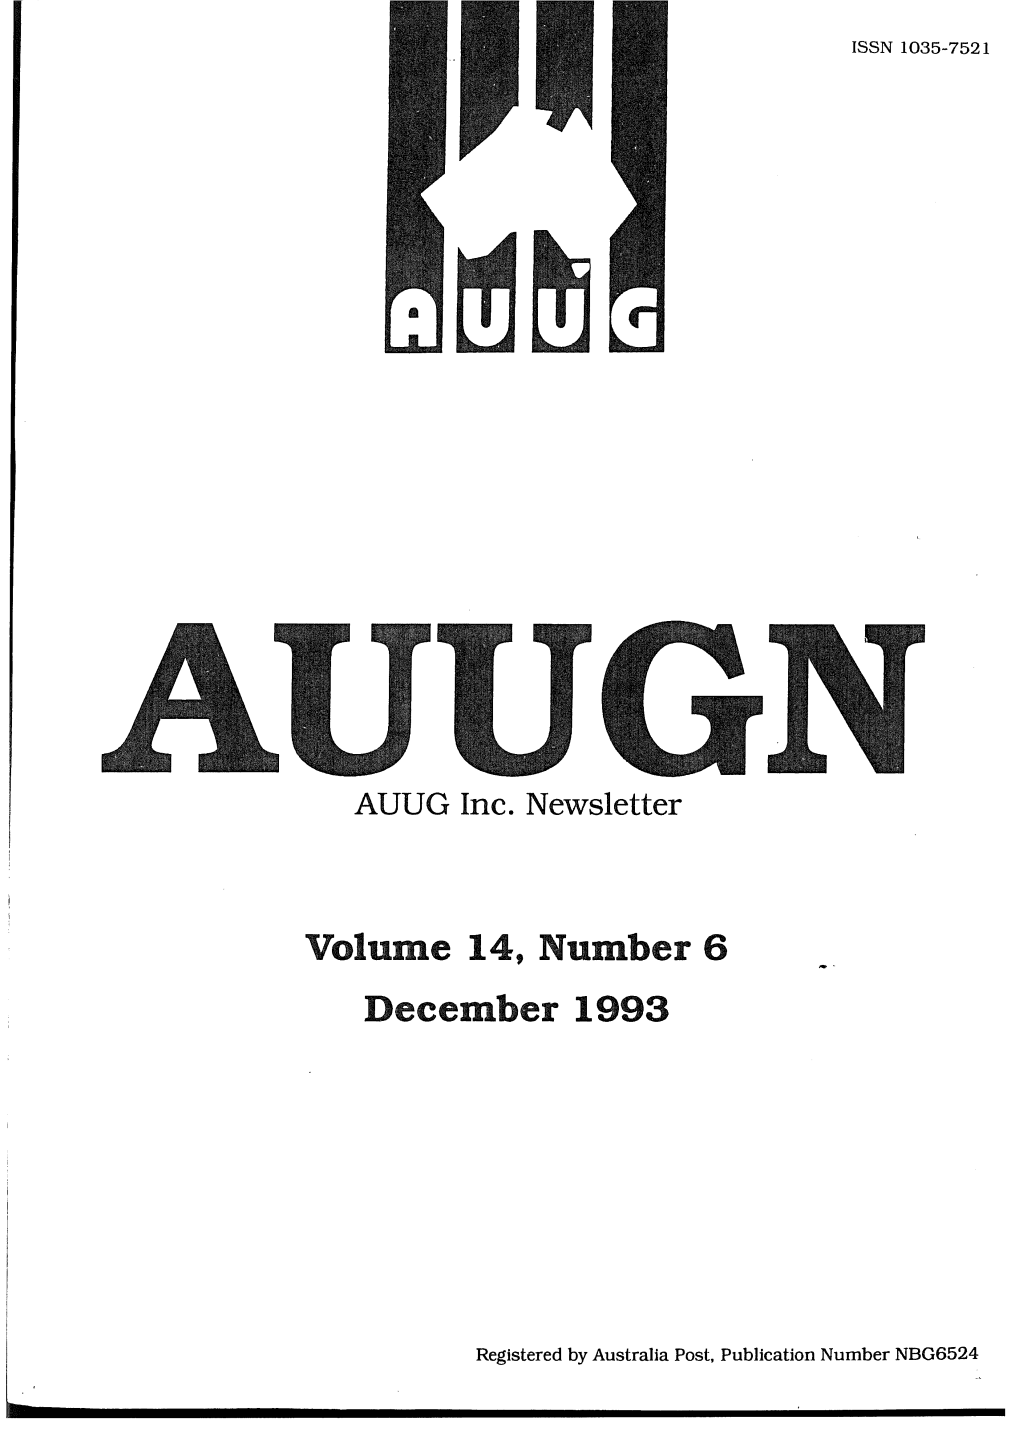 Volume 14, Number 6 December 1993